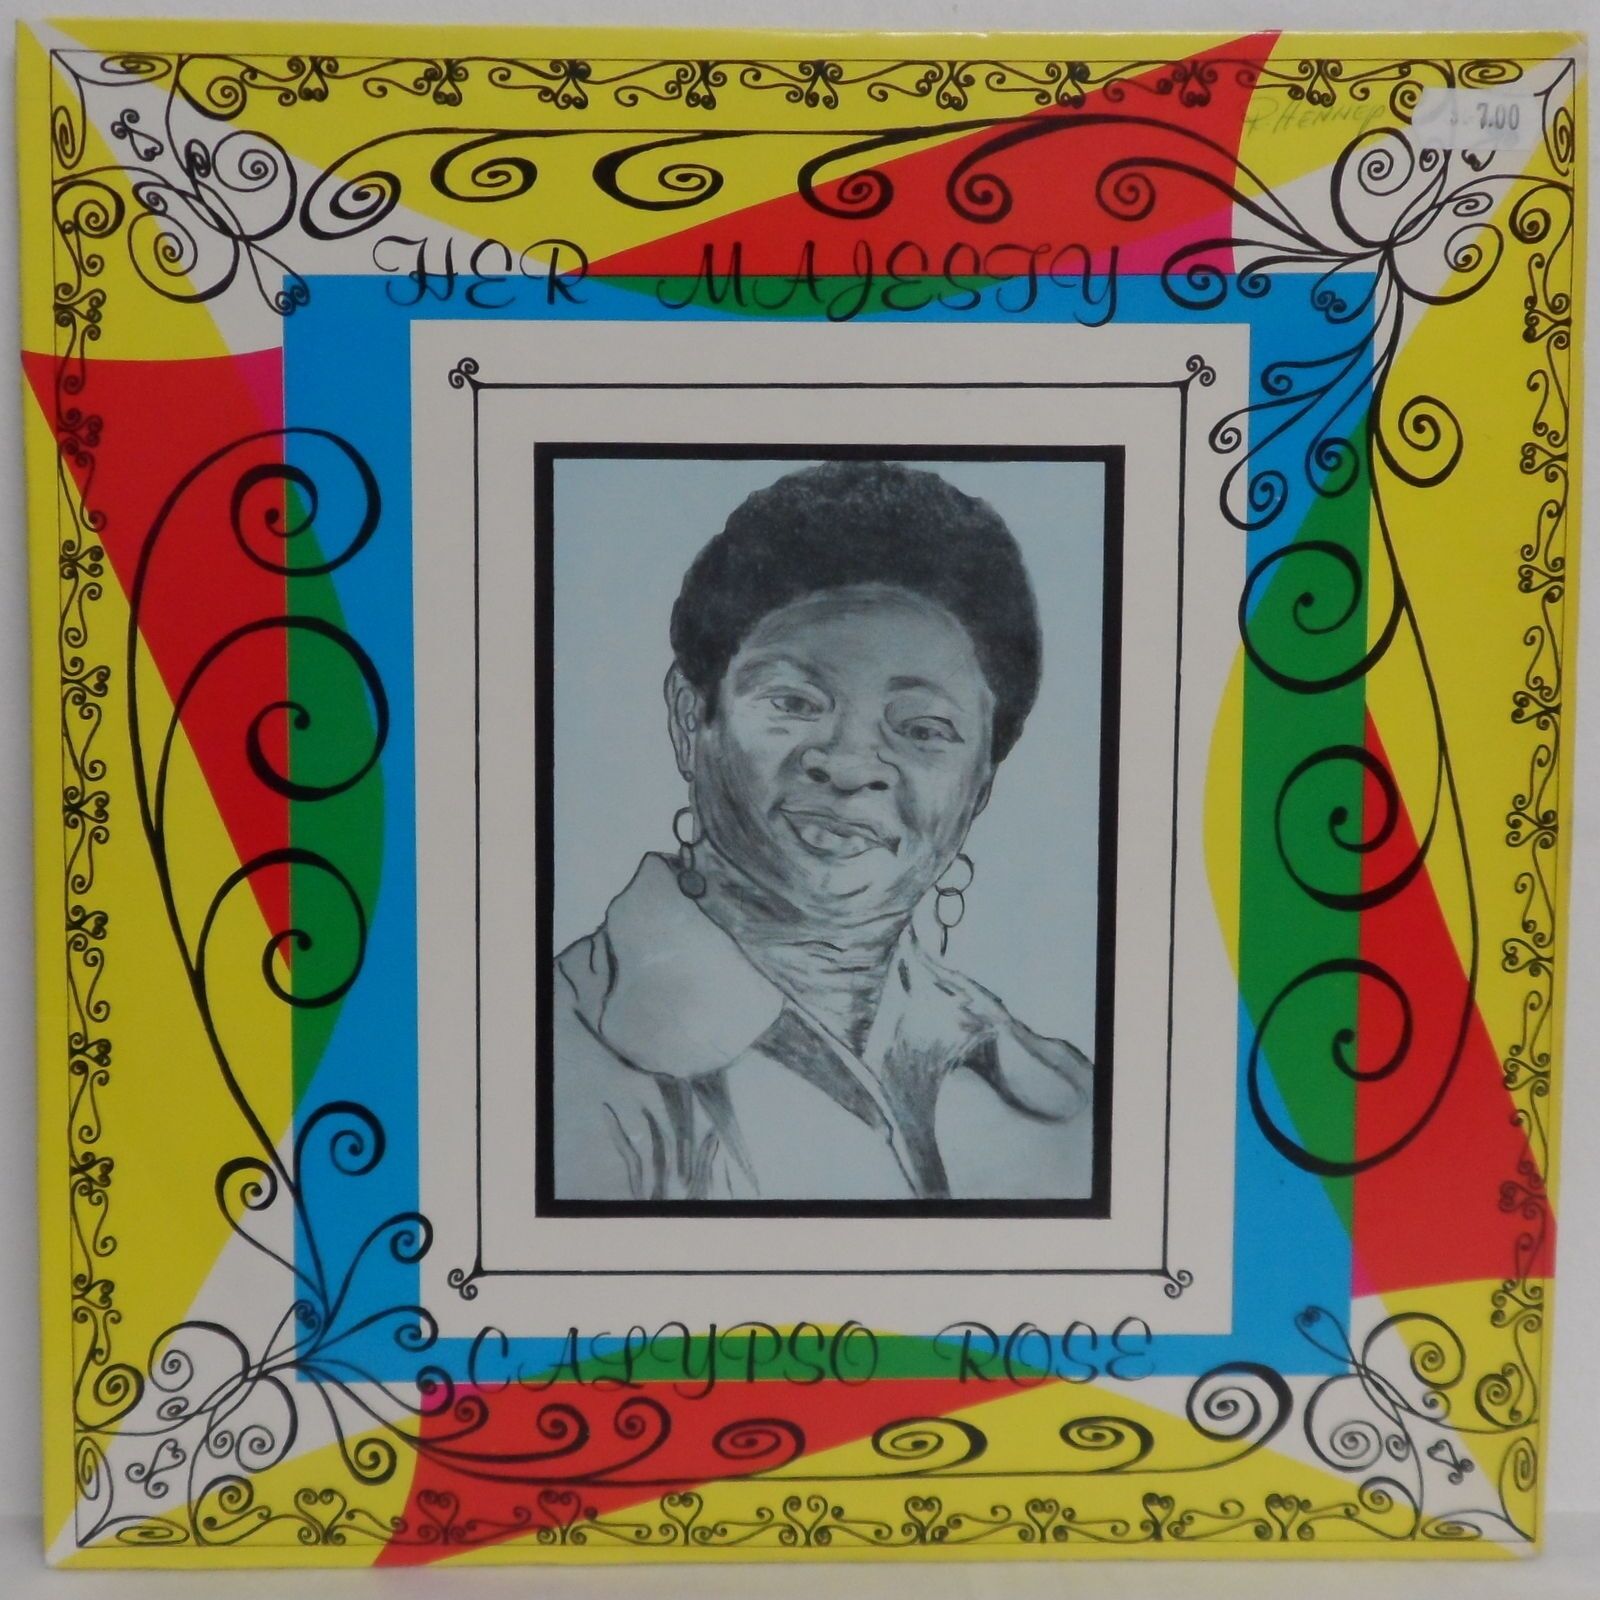 Calypso Rose ‎- Her Majesty Calypso Rose LP Vinyl Record 1977 Trinidad Tobado